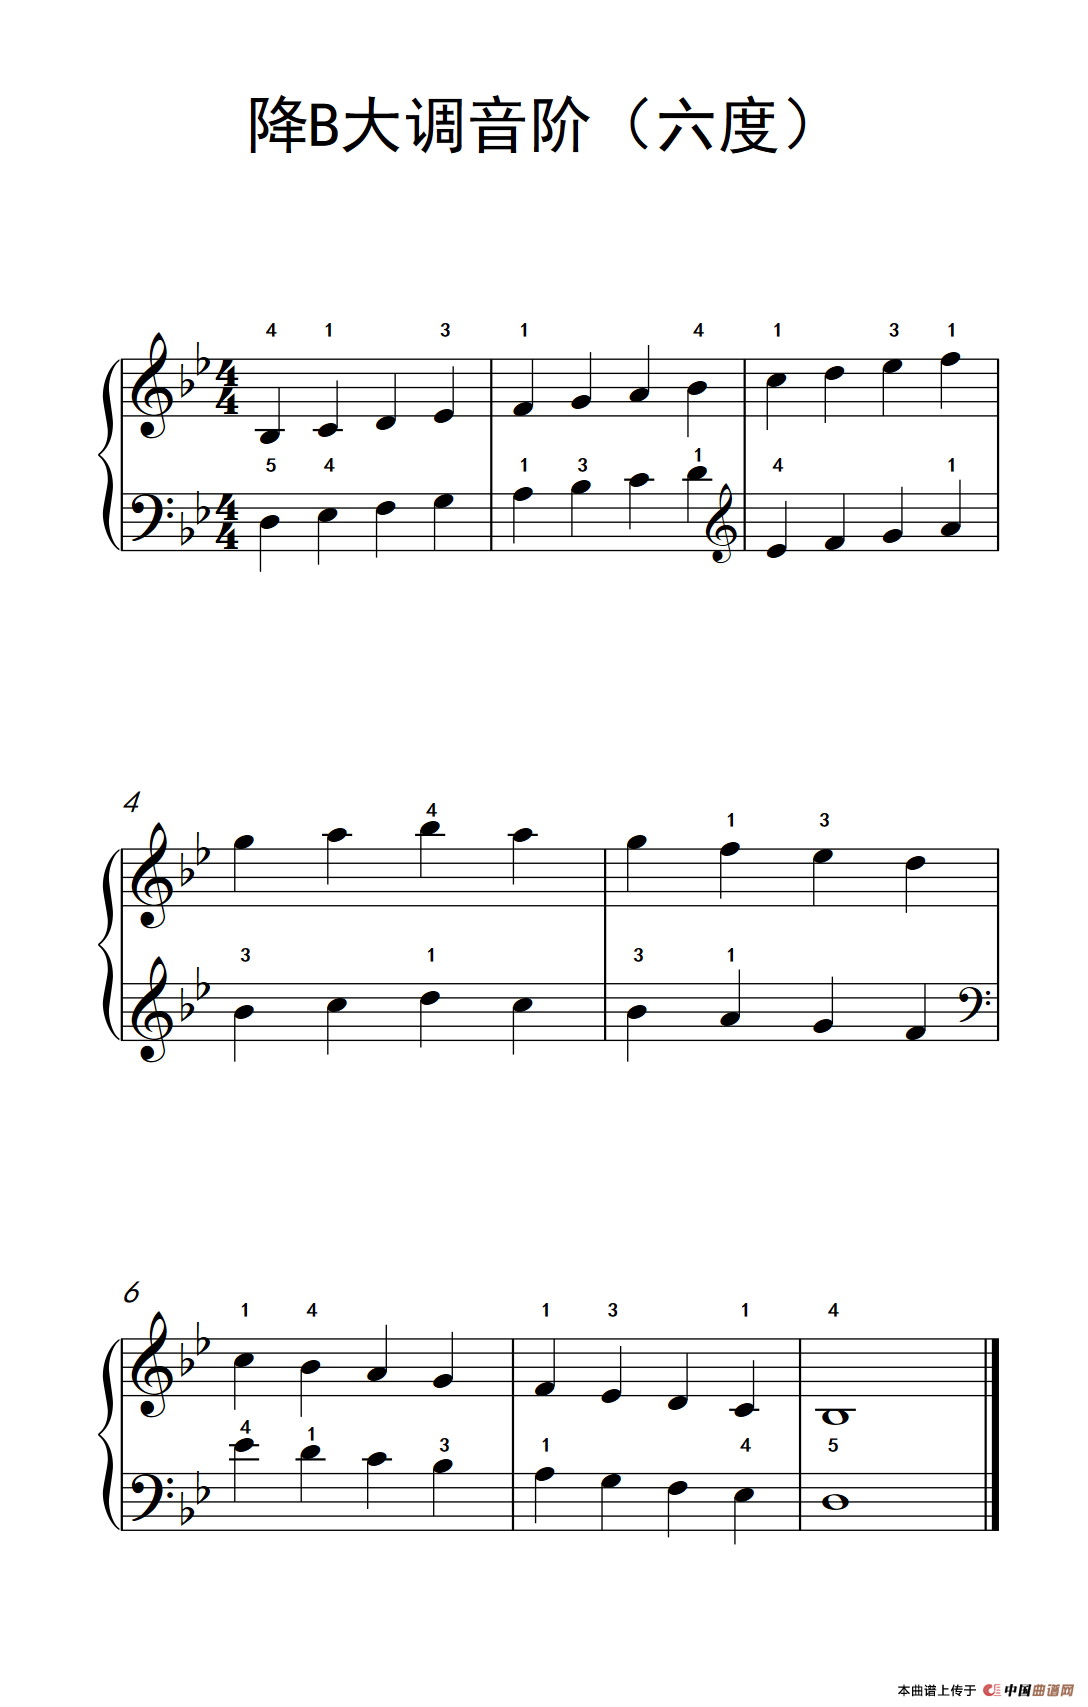 《降B大调音阶》钢琴曲谱图分享